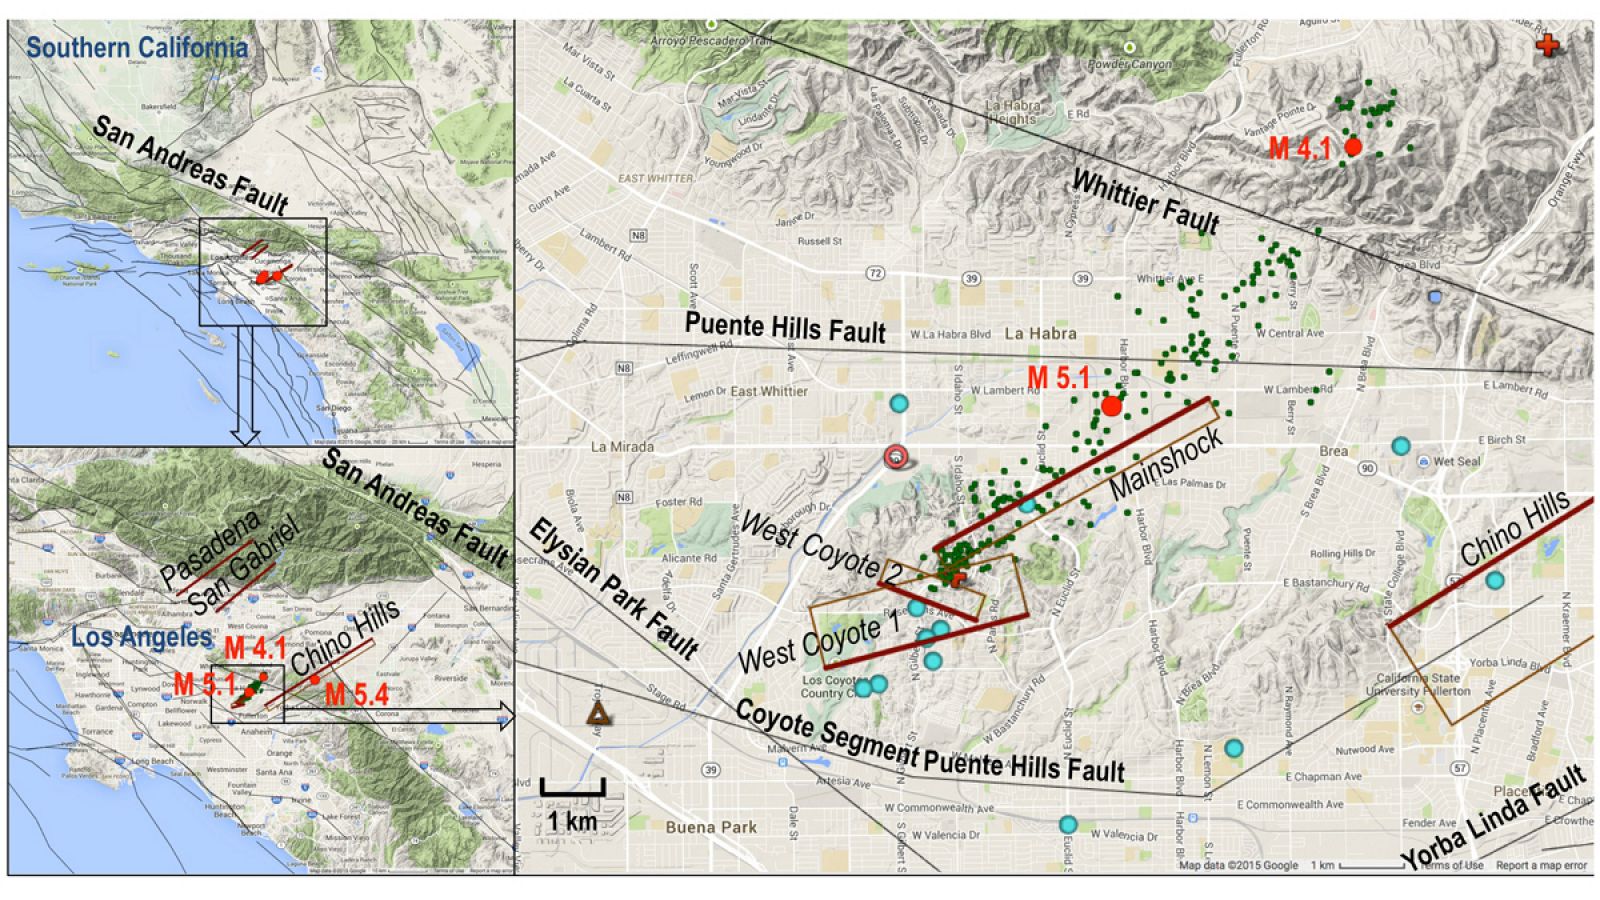 La predicción se basa en el estudio realizado tras un pequeño temblor en La Habra (al norte de Los Angeles) el 28 de marzo de 2014.